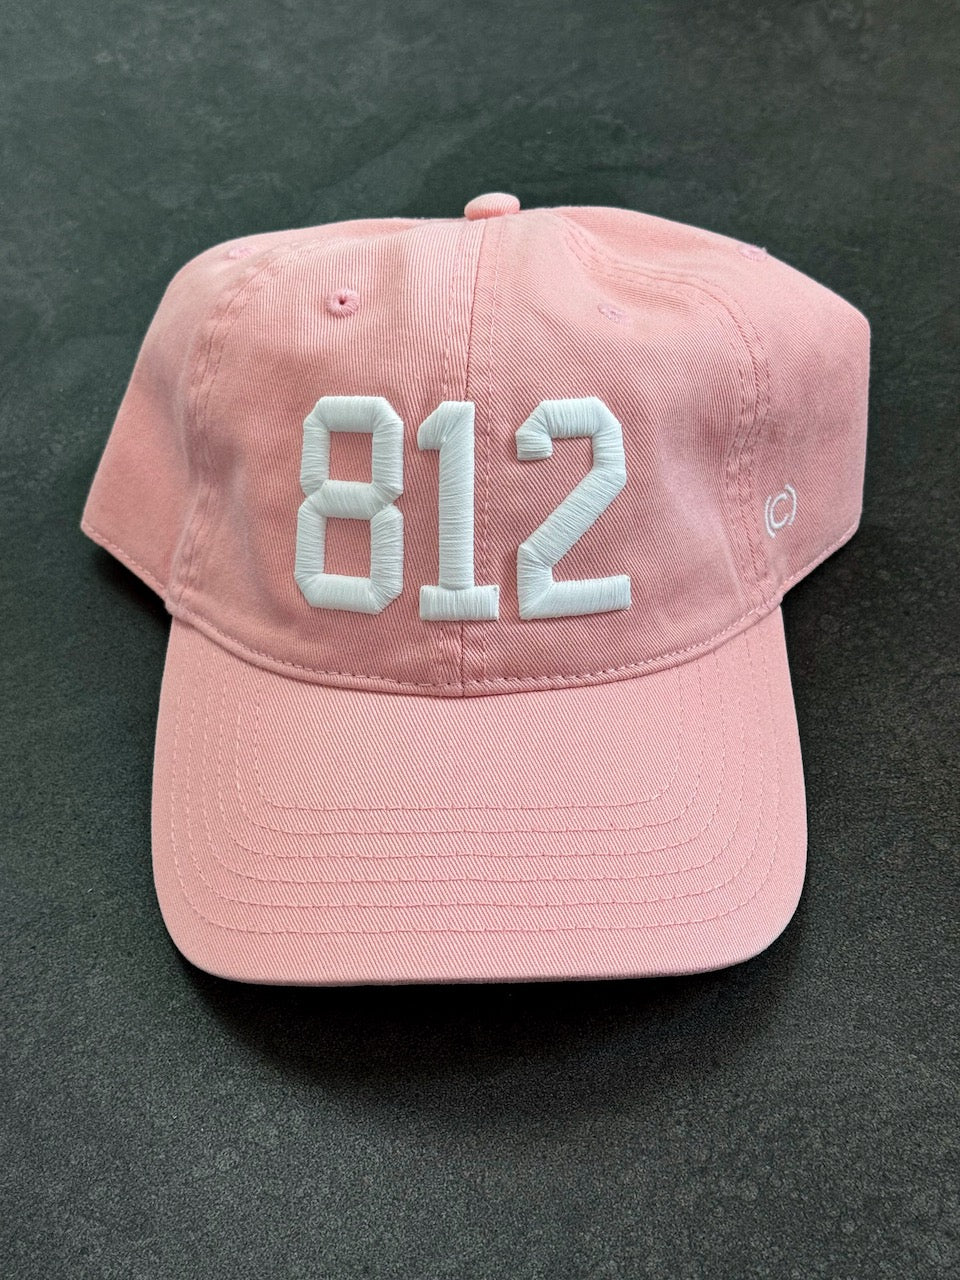 812 Hat - Pink w/ White